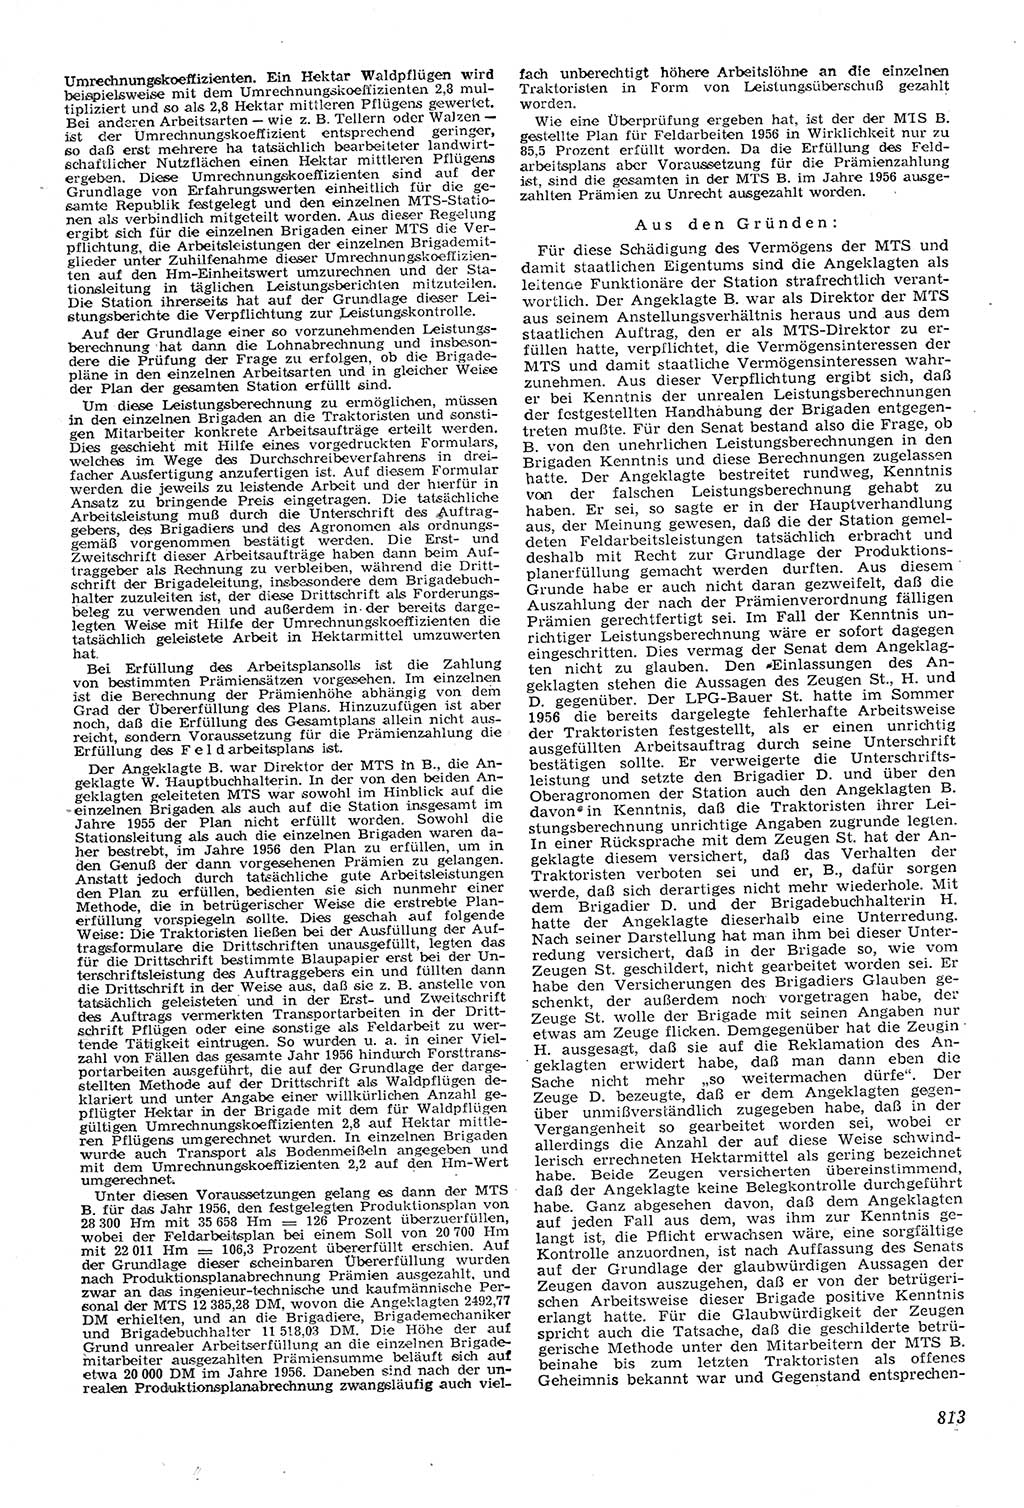 Neue Justiz (NJ), Zeitschrift für Recht und Rechtswissenschaft [Deutsche Demokratische Republik (DDR)], 11. Jahrgang 1957, Seite 813 (NJ DDR 1957, S. 813)